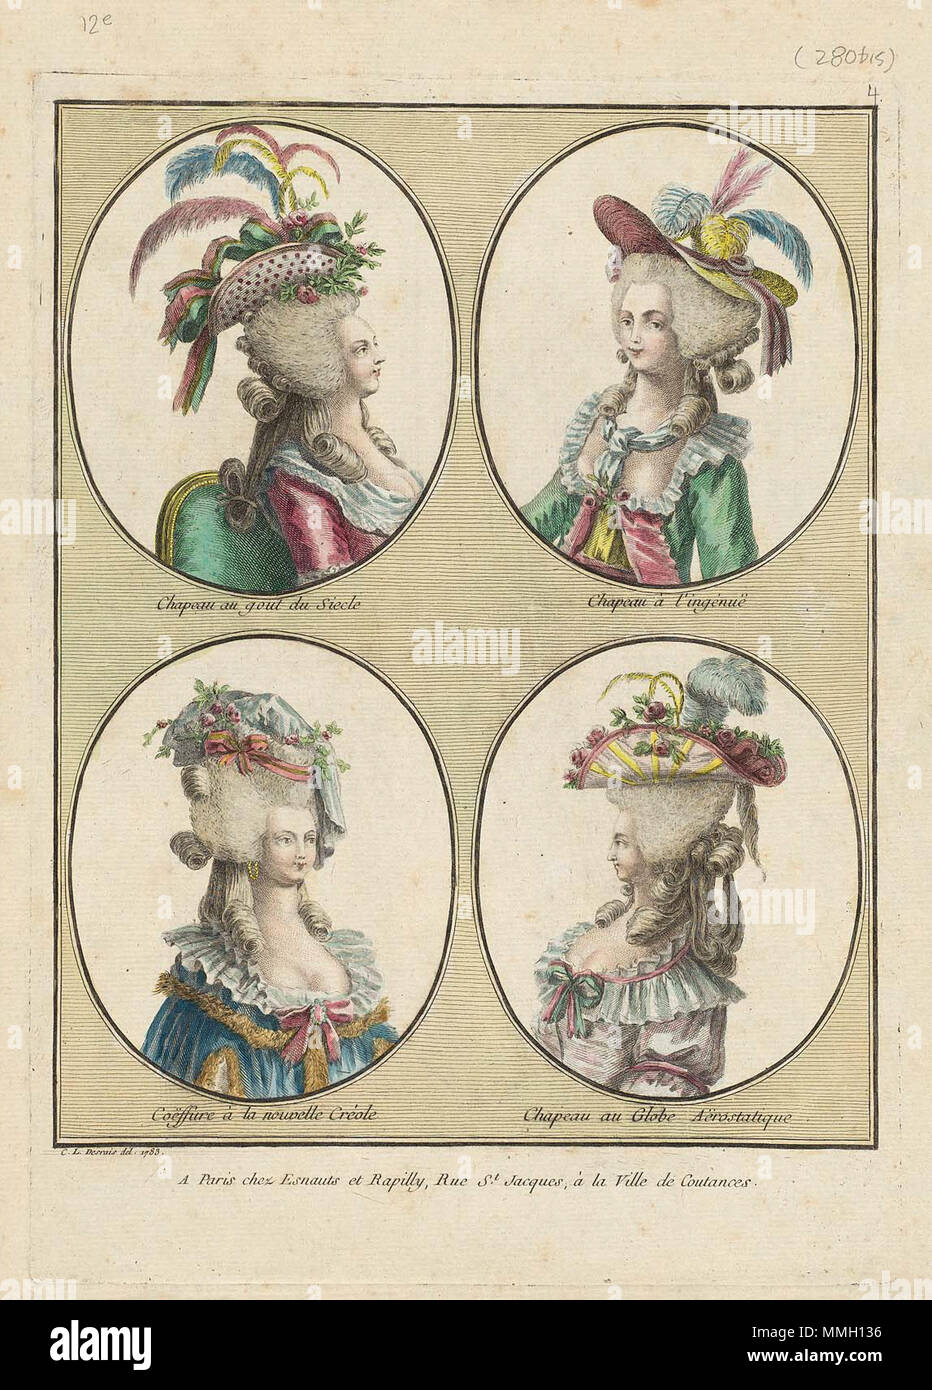 . Plate 280 from Gallerie des Modes et Costumes Français. 12e Cahier des coeffures les plus à la mode en 1785.  1785. Chapeau au gout du Siecle Stock Photo